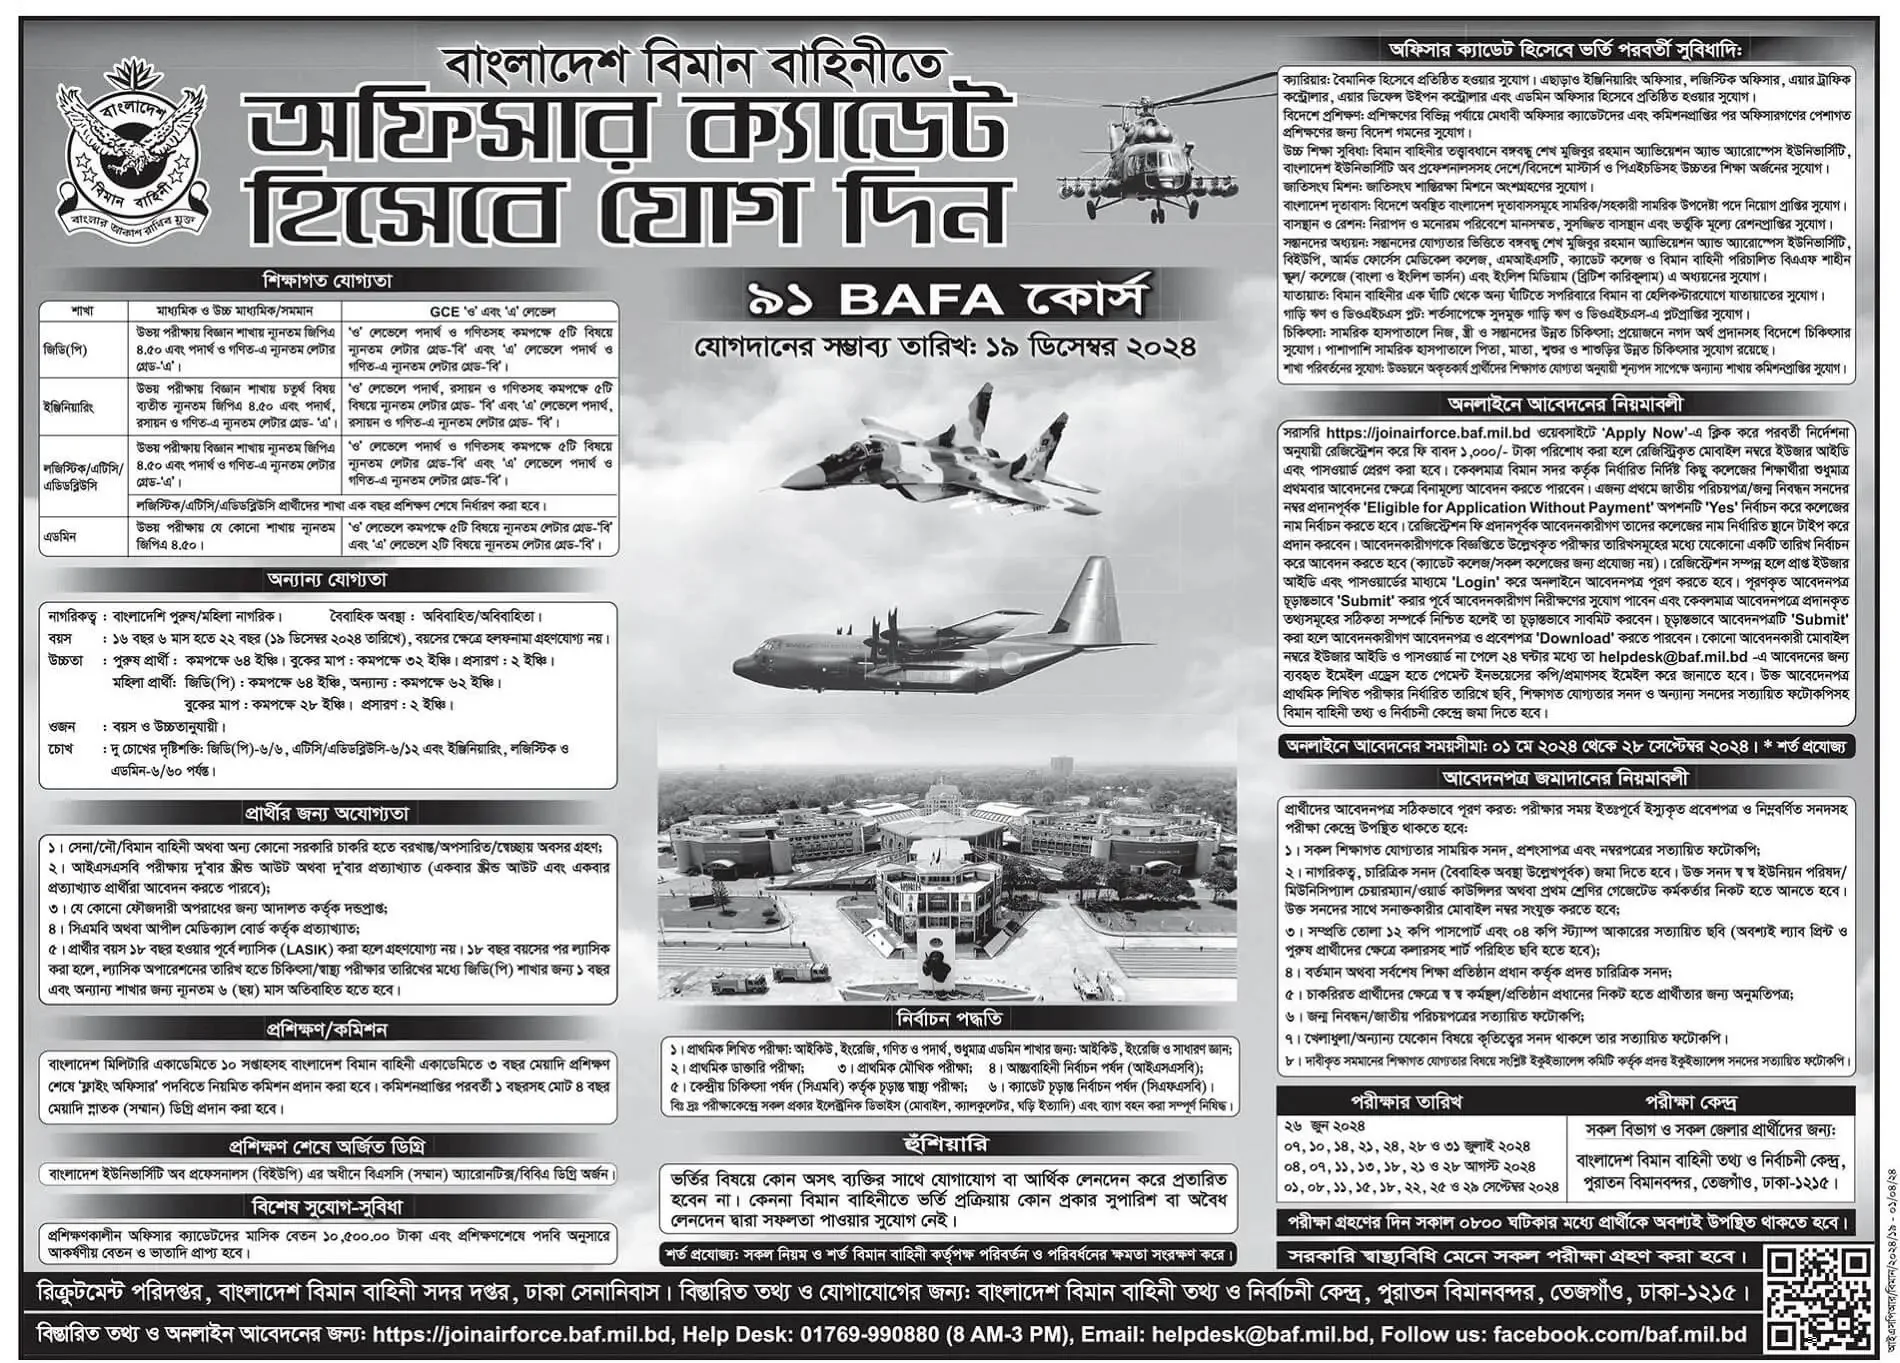 বাংলাদেশ বিমান বাহিনী নিয়োগ বিজ্ঞপ্তি ২০২৪ - Bangladesh Air Force Job Circular 2024